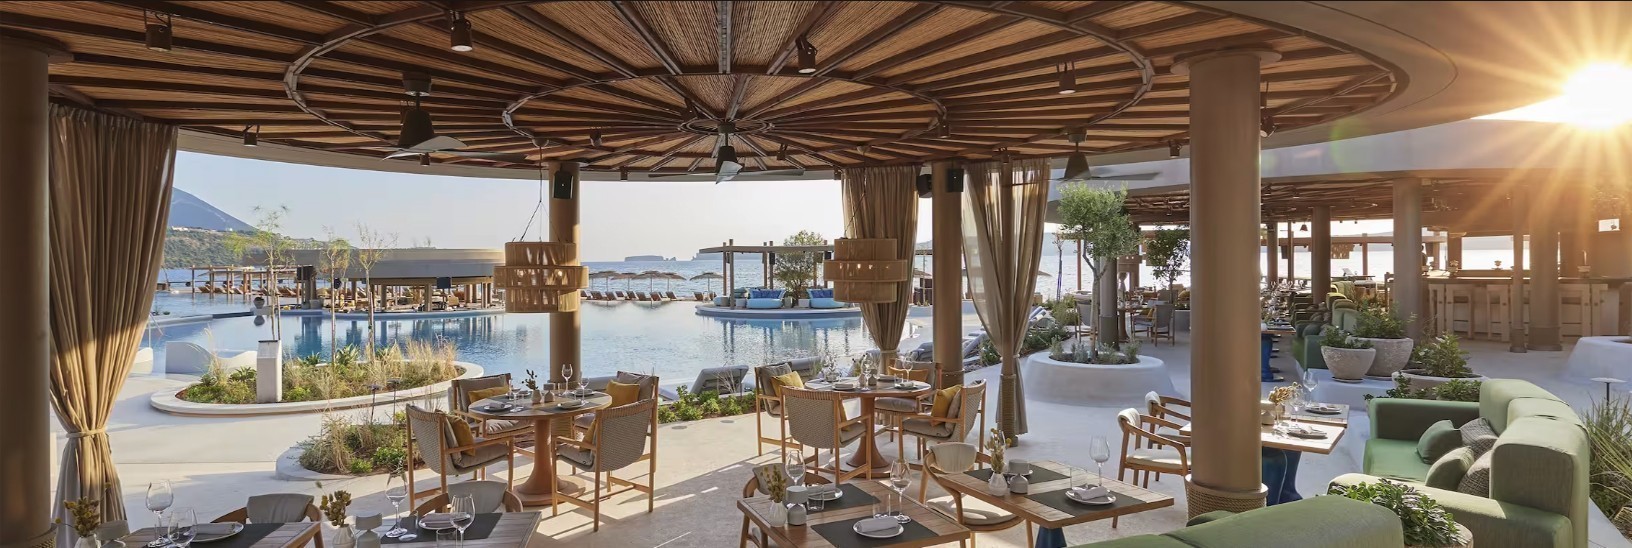 Πώς είναι η ζωή μέσα στο νέο Mandarin Oriental Costa Navarino – Σουίτες, εστιατόρια και design του κορυφαίου resort